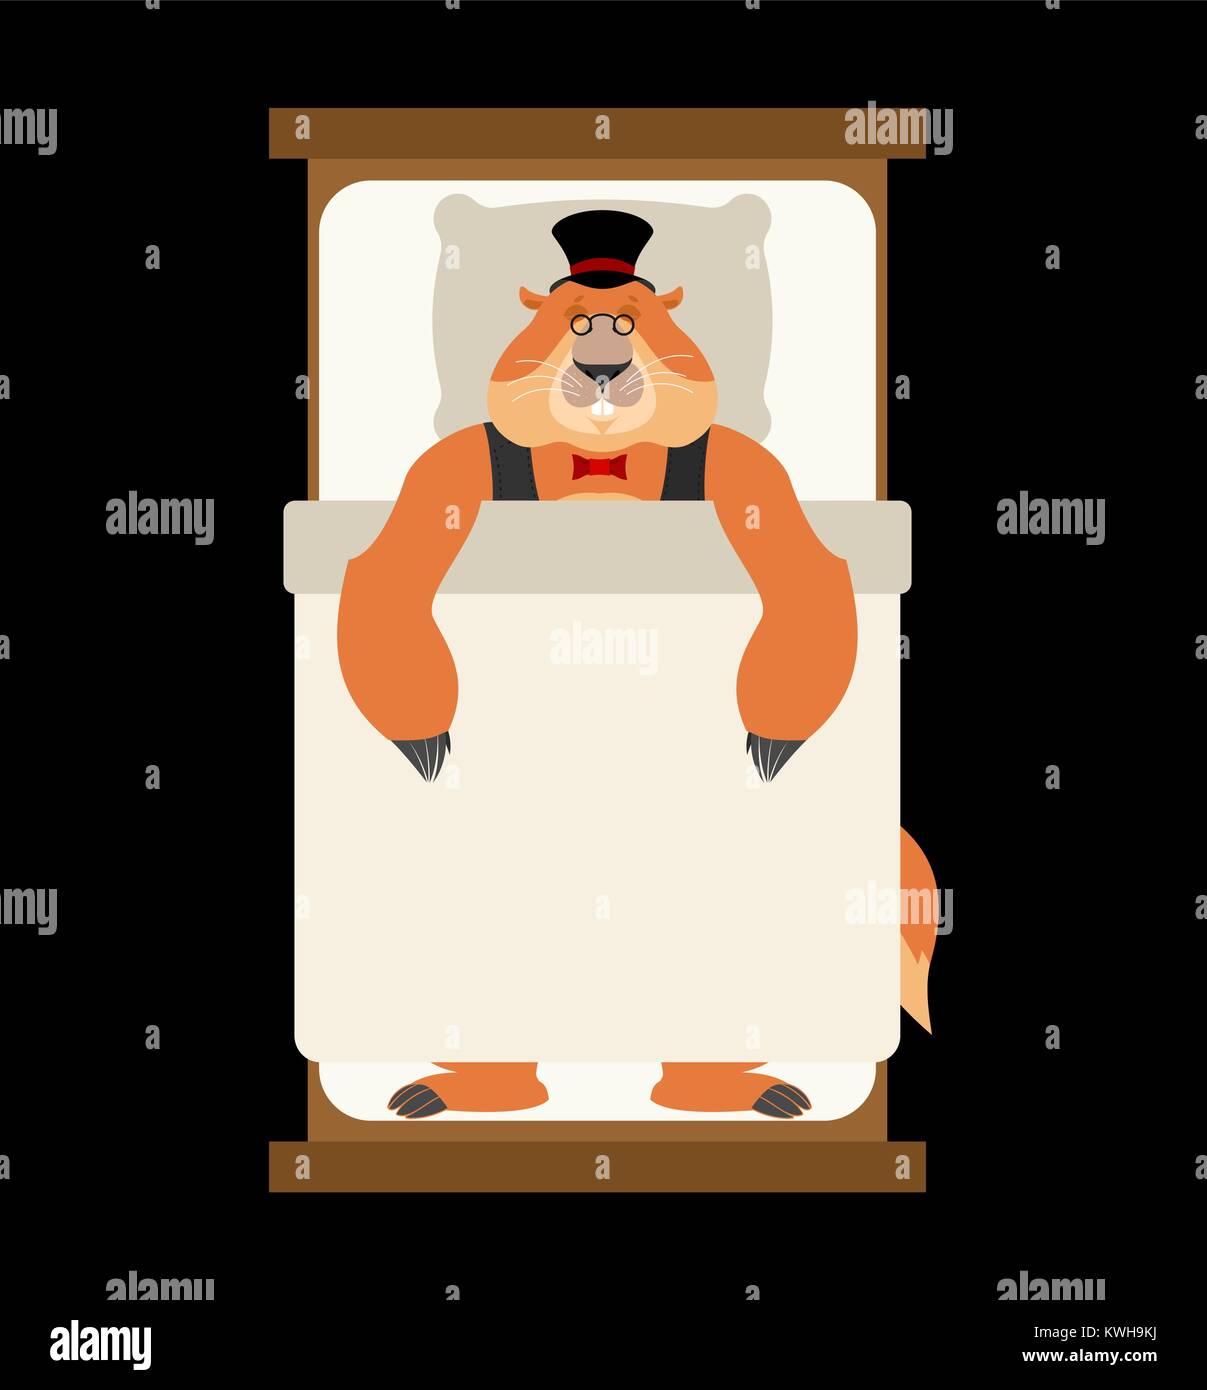 Le jour de la marmotte. Marmotte en Hat sleeping on bed. Marmotte d'endormi. Marmot en déshérence. Vector illustration Illustration de Vecteur